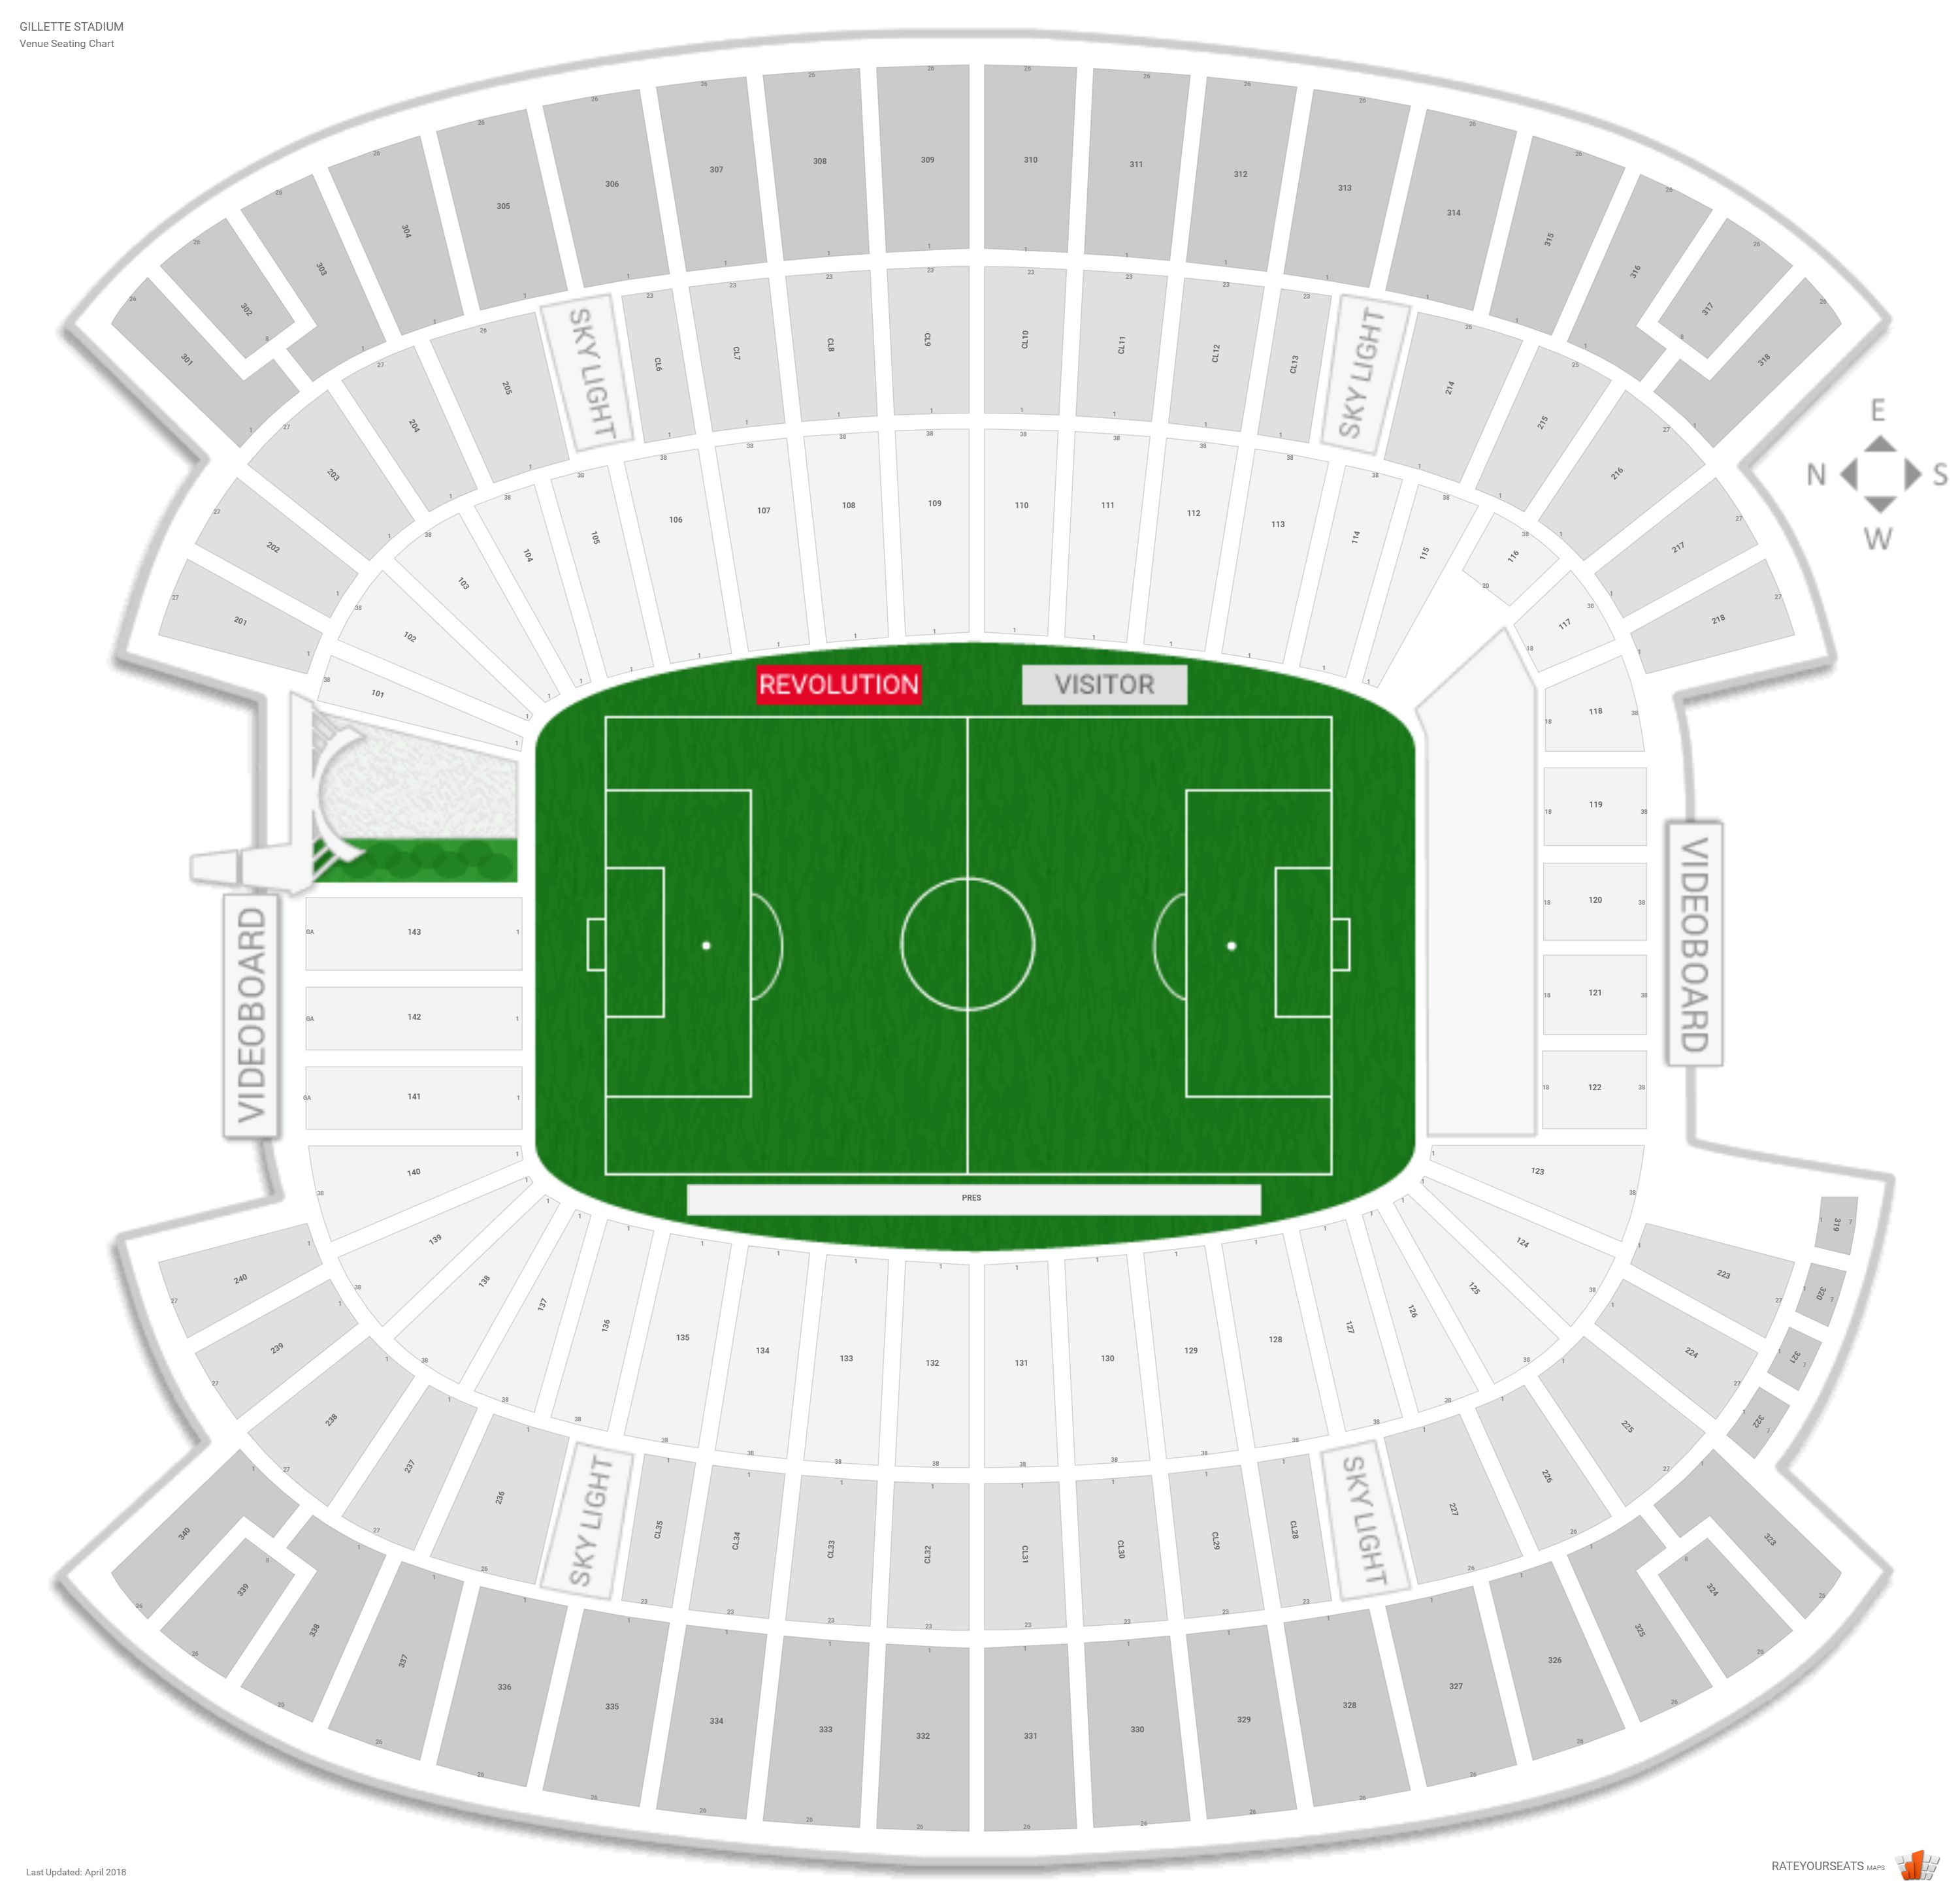 Gillette Stadium Soccer Seating Chart